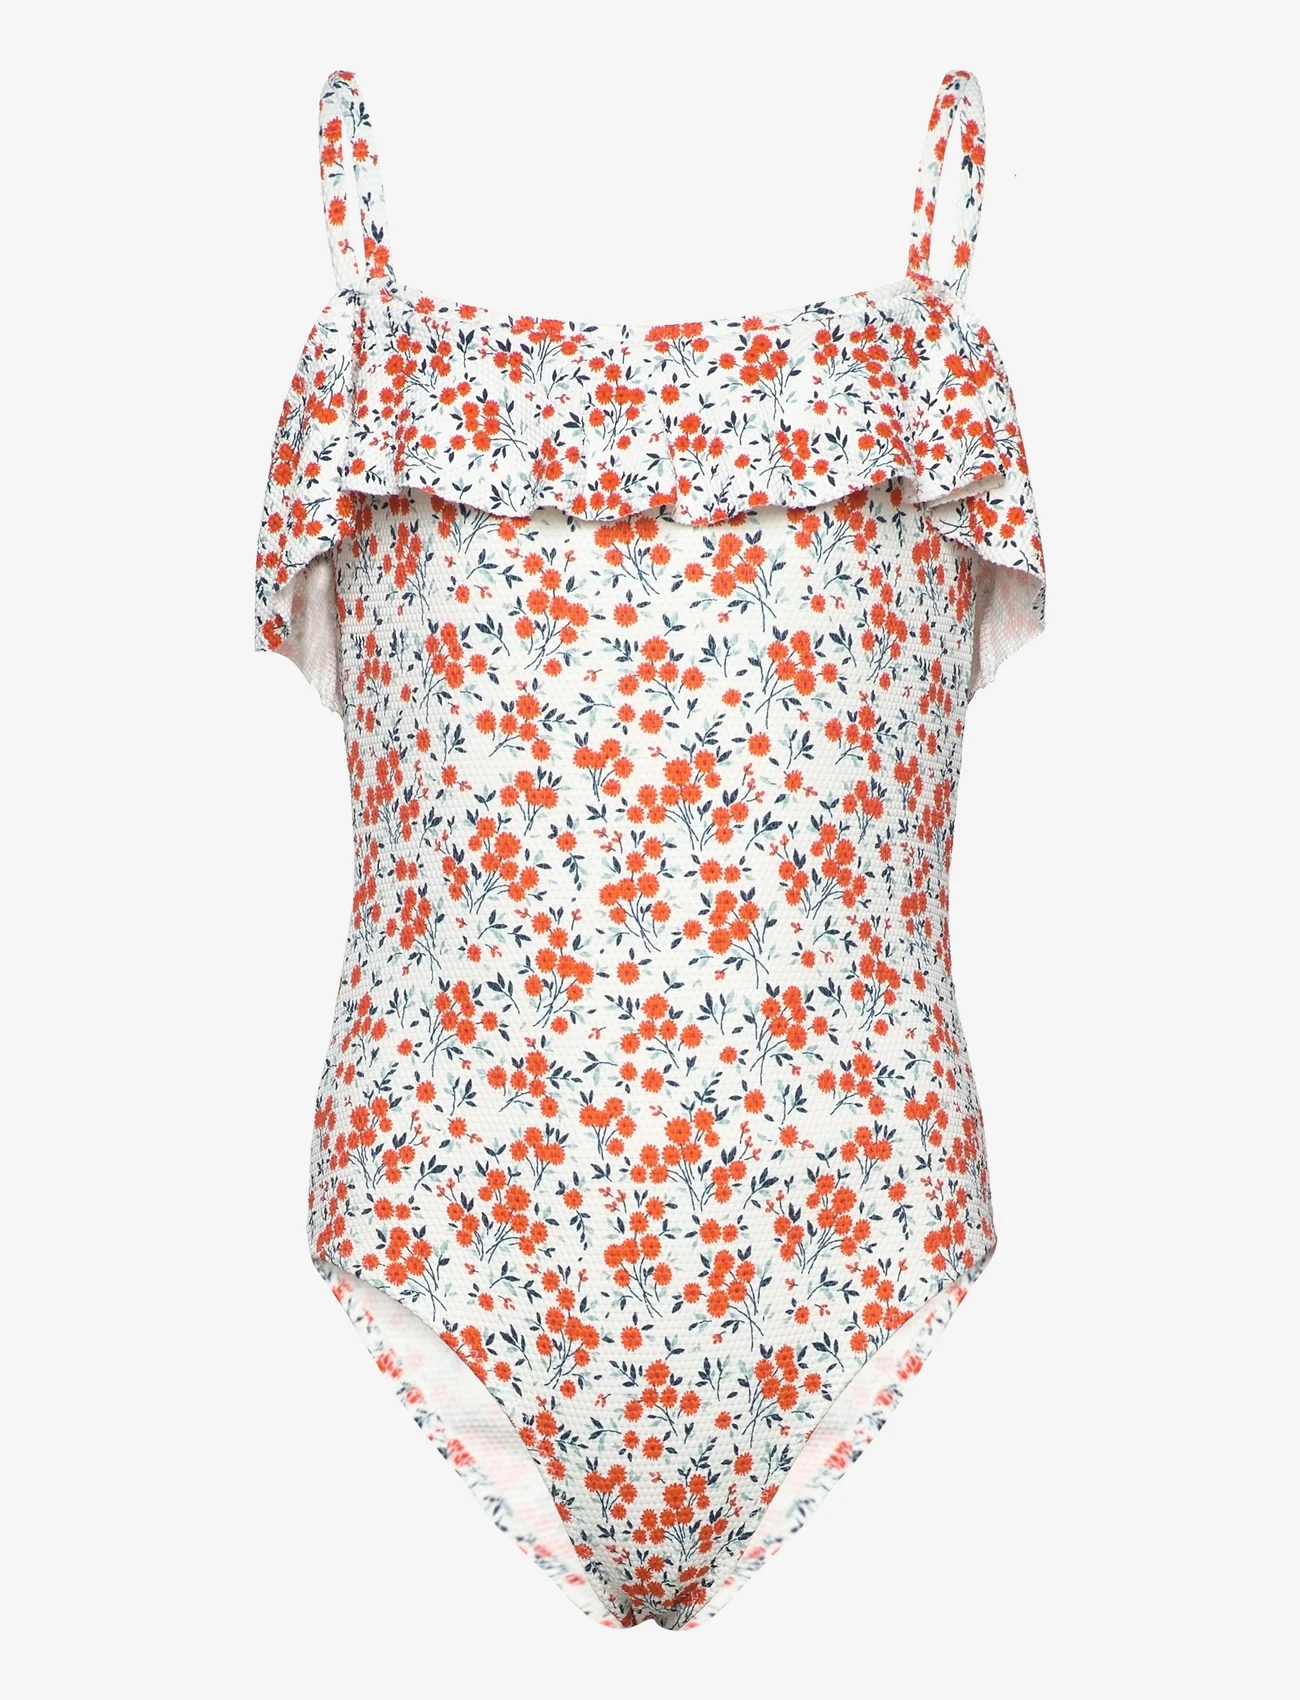 Mango - Ruffled floral print swimsuit - gode sommertilbud - white - 0